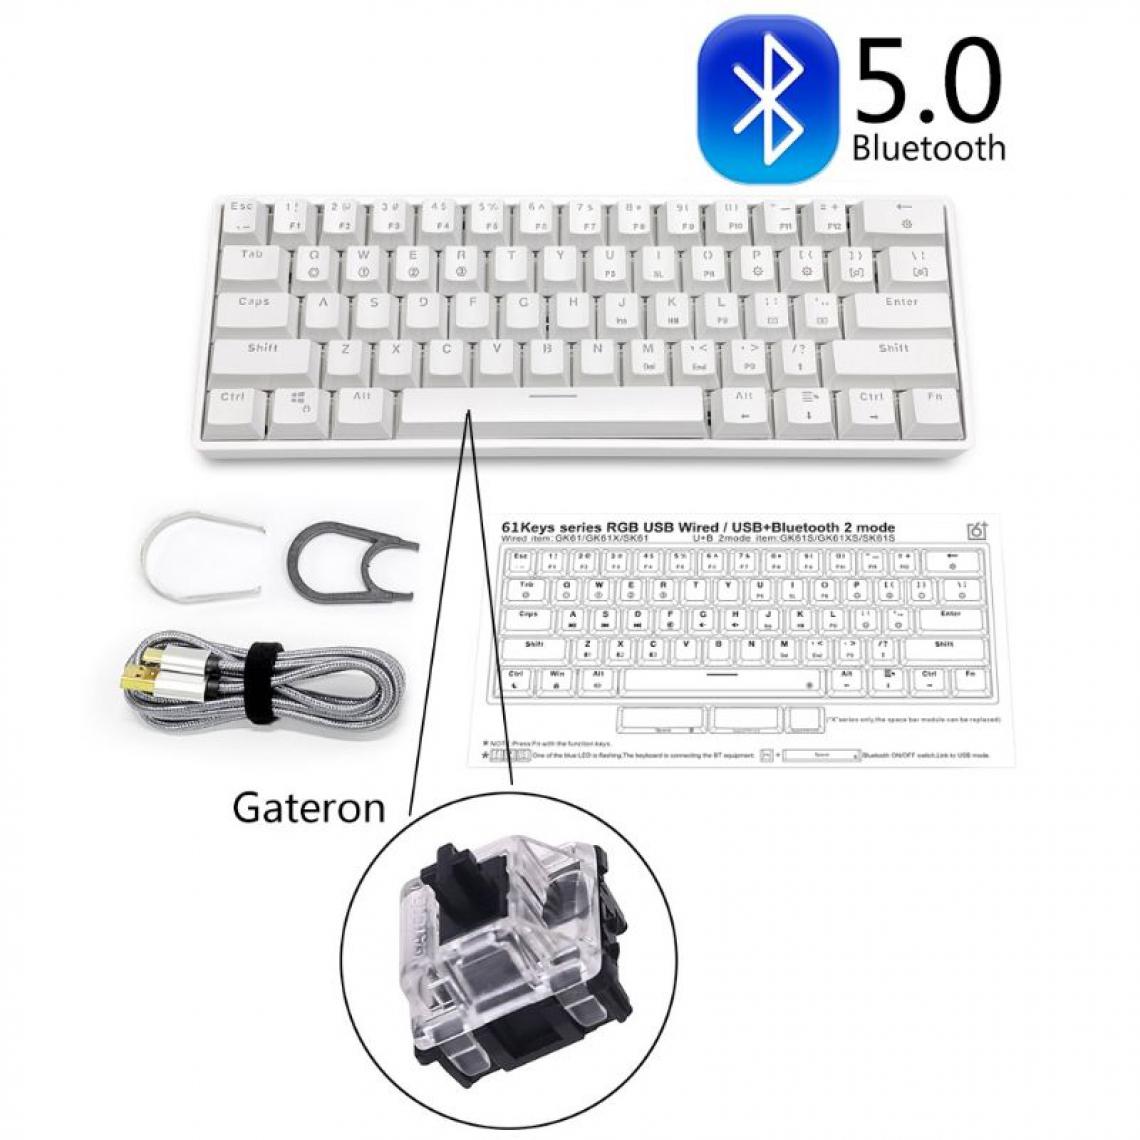 Generic - Clavier Mécanique USB Filaire SK61 ,  Connecté Bluetooth 5.0 LED Rétroéclairé avec 61 Touches et Switches Noir Pour Ordinateur De Bureau/ Portable 11.5 * 4.05 * 1.57 inch - Blanc  - Clavier